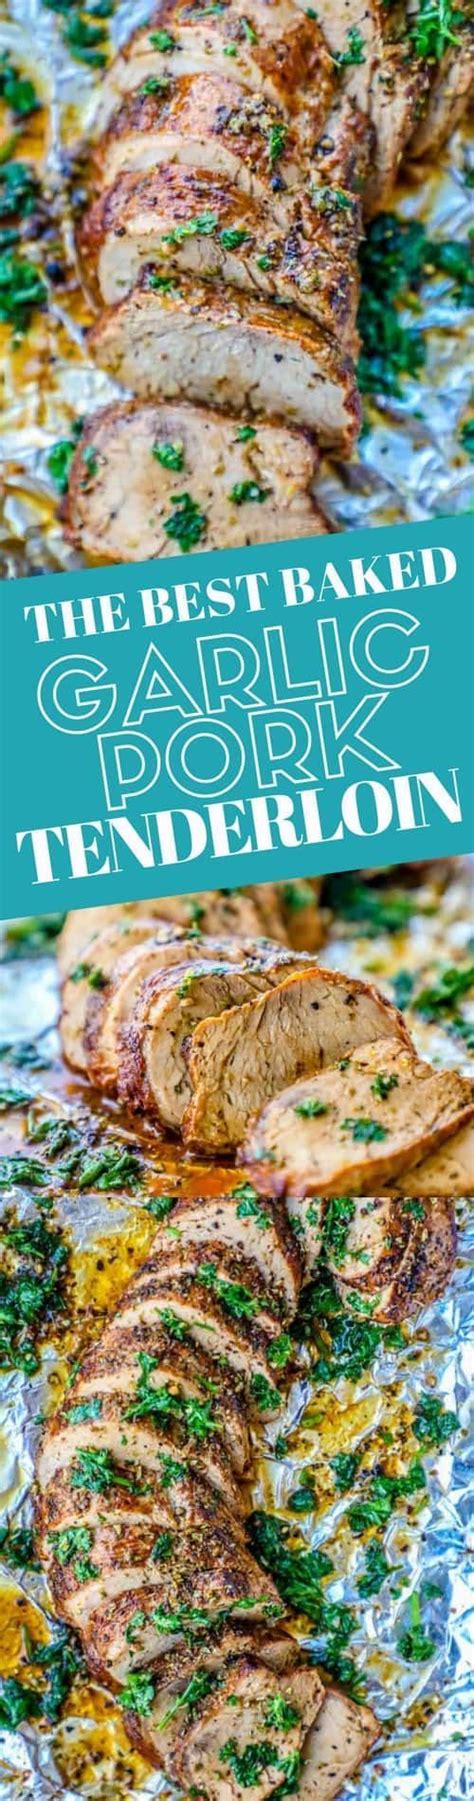 Low calorie pork tenderloin w smokey expresso rub recipe 13. Low Calorie Pork Tenderloin : How Many Calories Are in 4 Ounces of Pork Tenderloin ... - It is ...